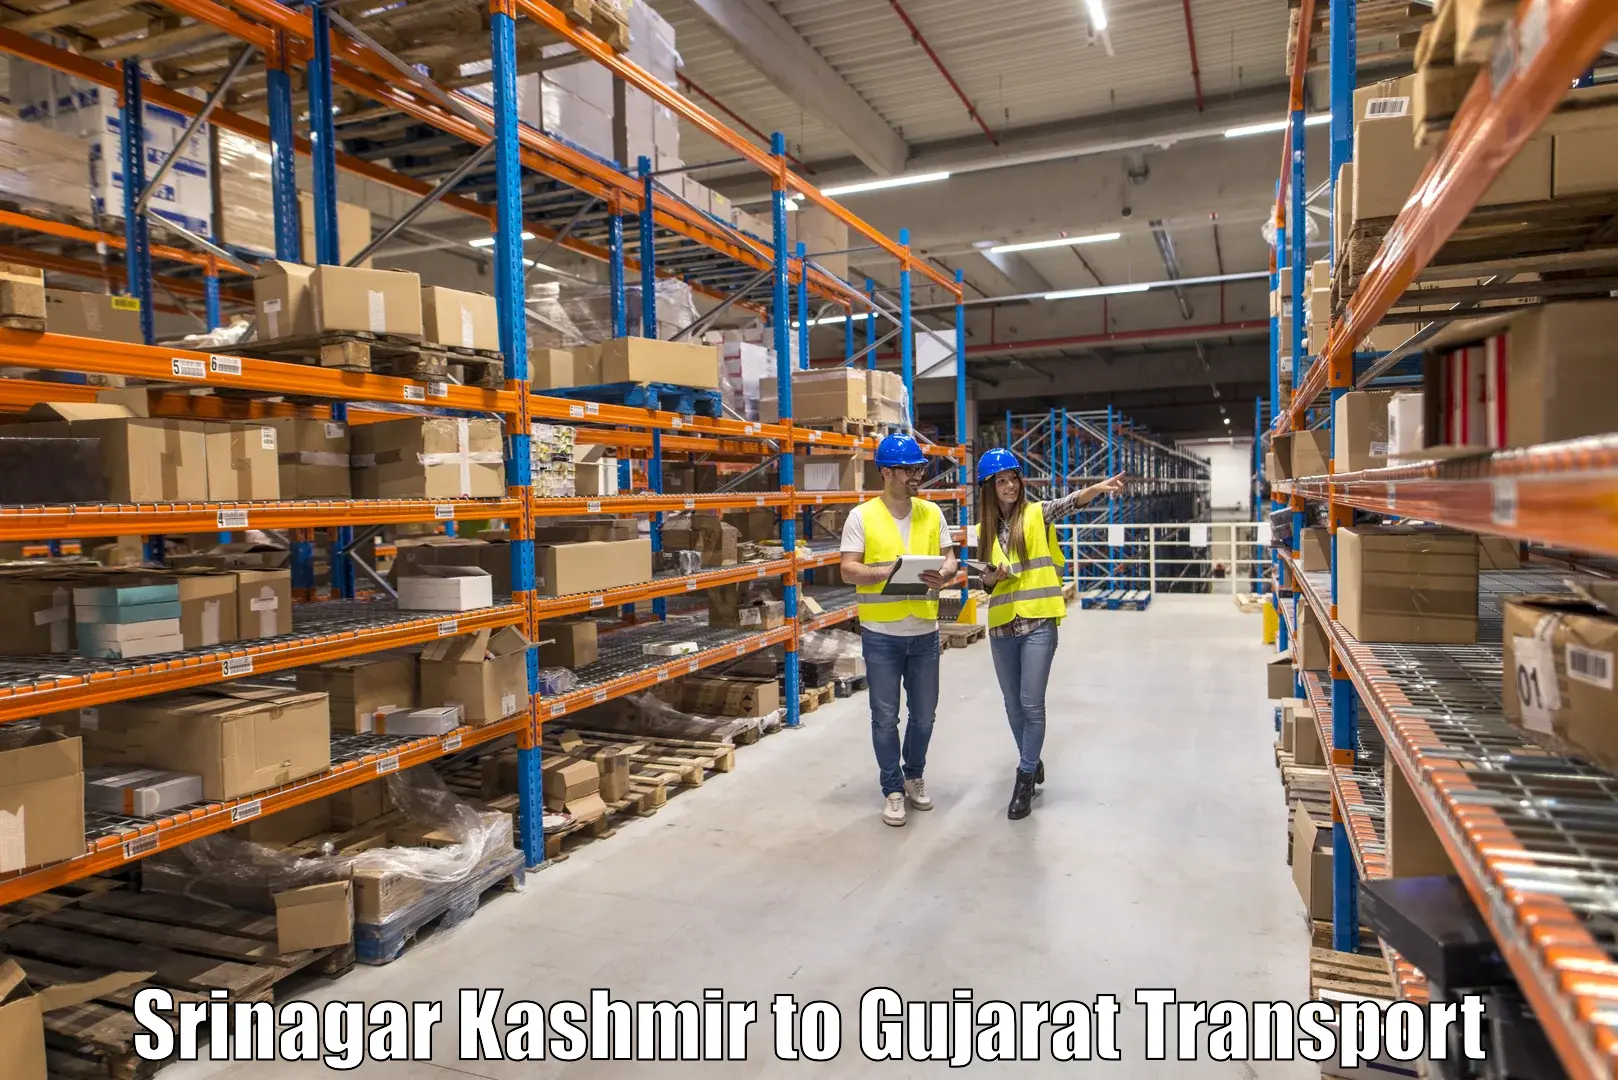 Bike shipping service Srinagar Kashmir to Matar